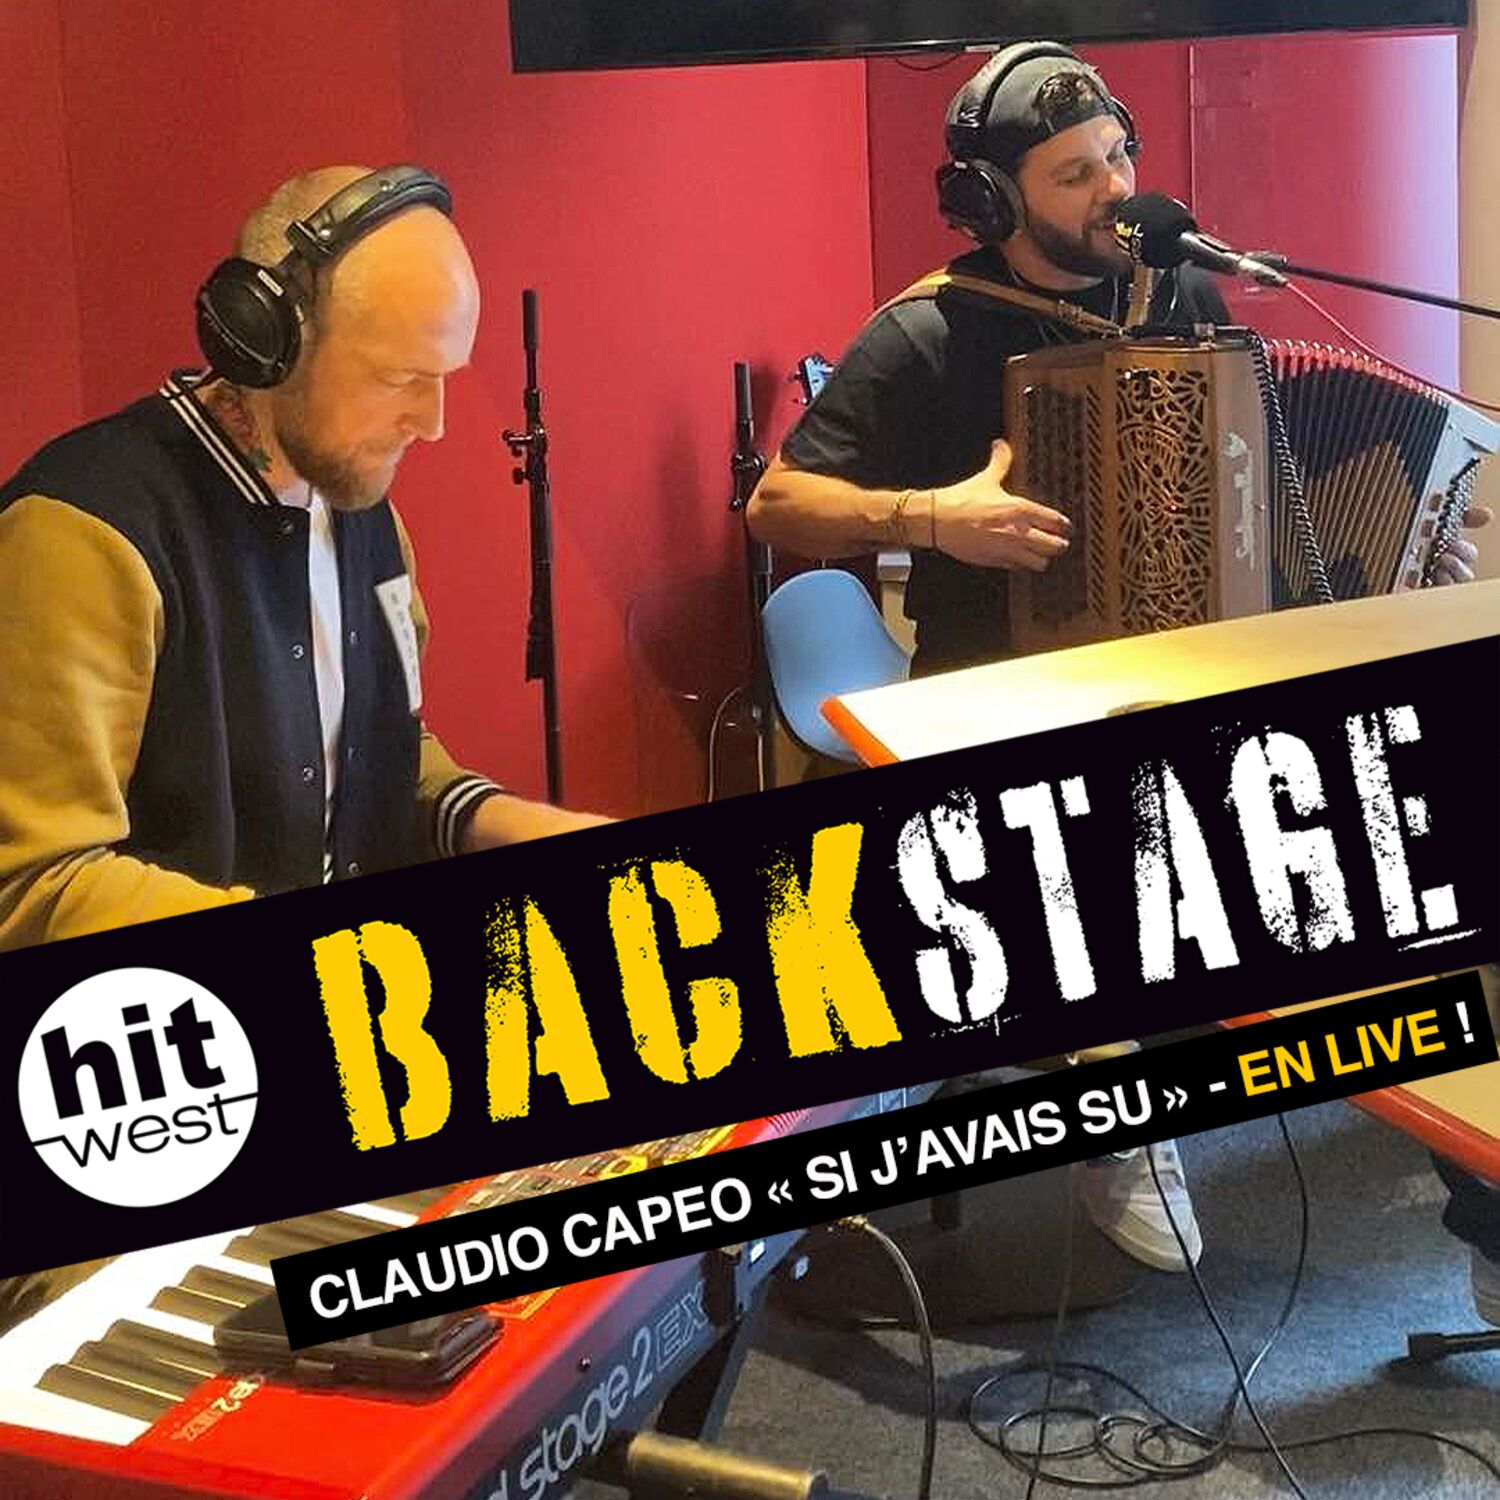 Claudio Capéo reprend "Si j'avais su"  dans Backstage !